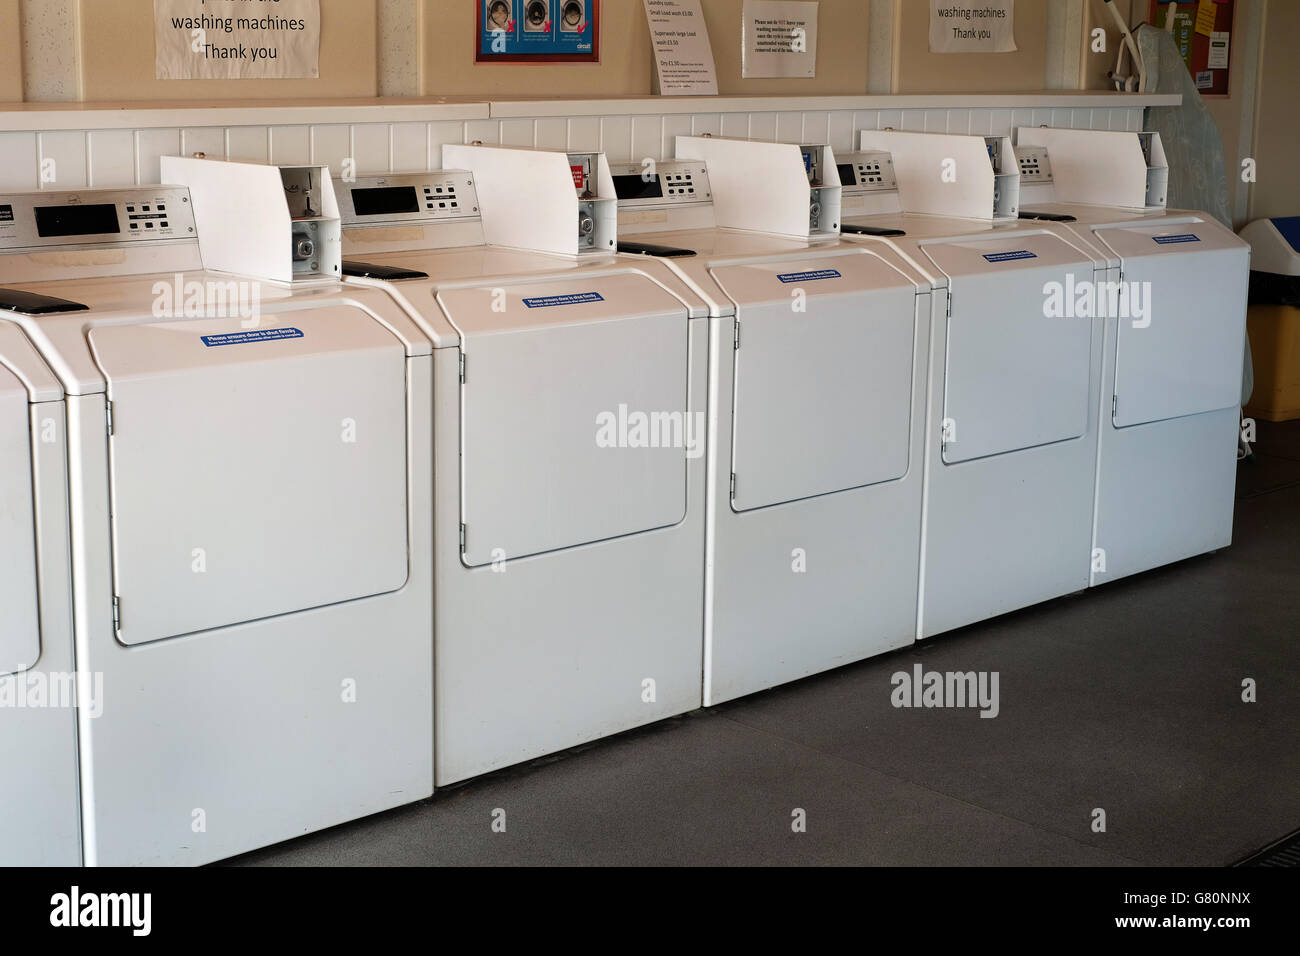 Type industriel machines laver dans un camp de la blanchisserie. Banque D'Images